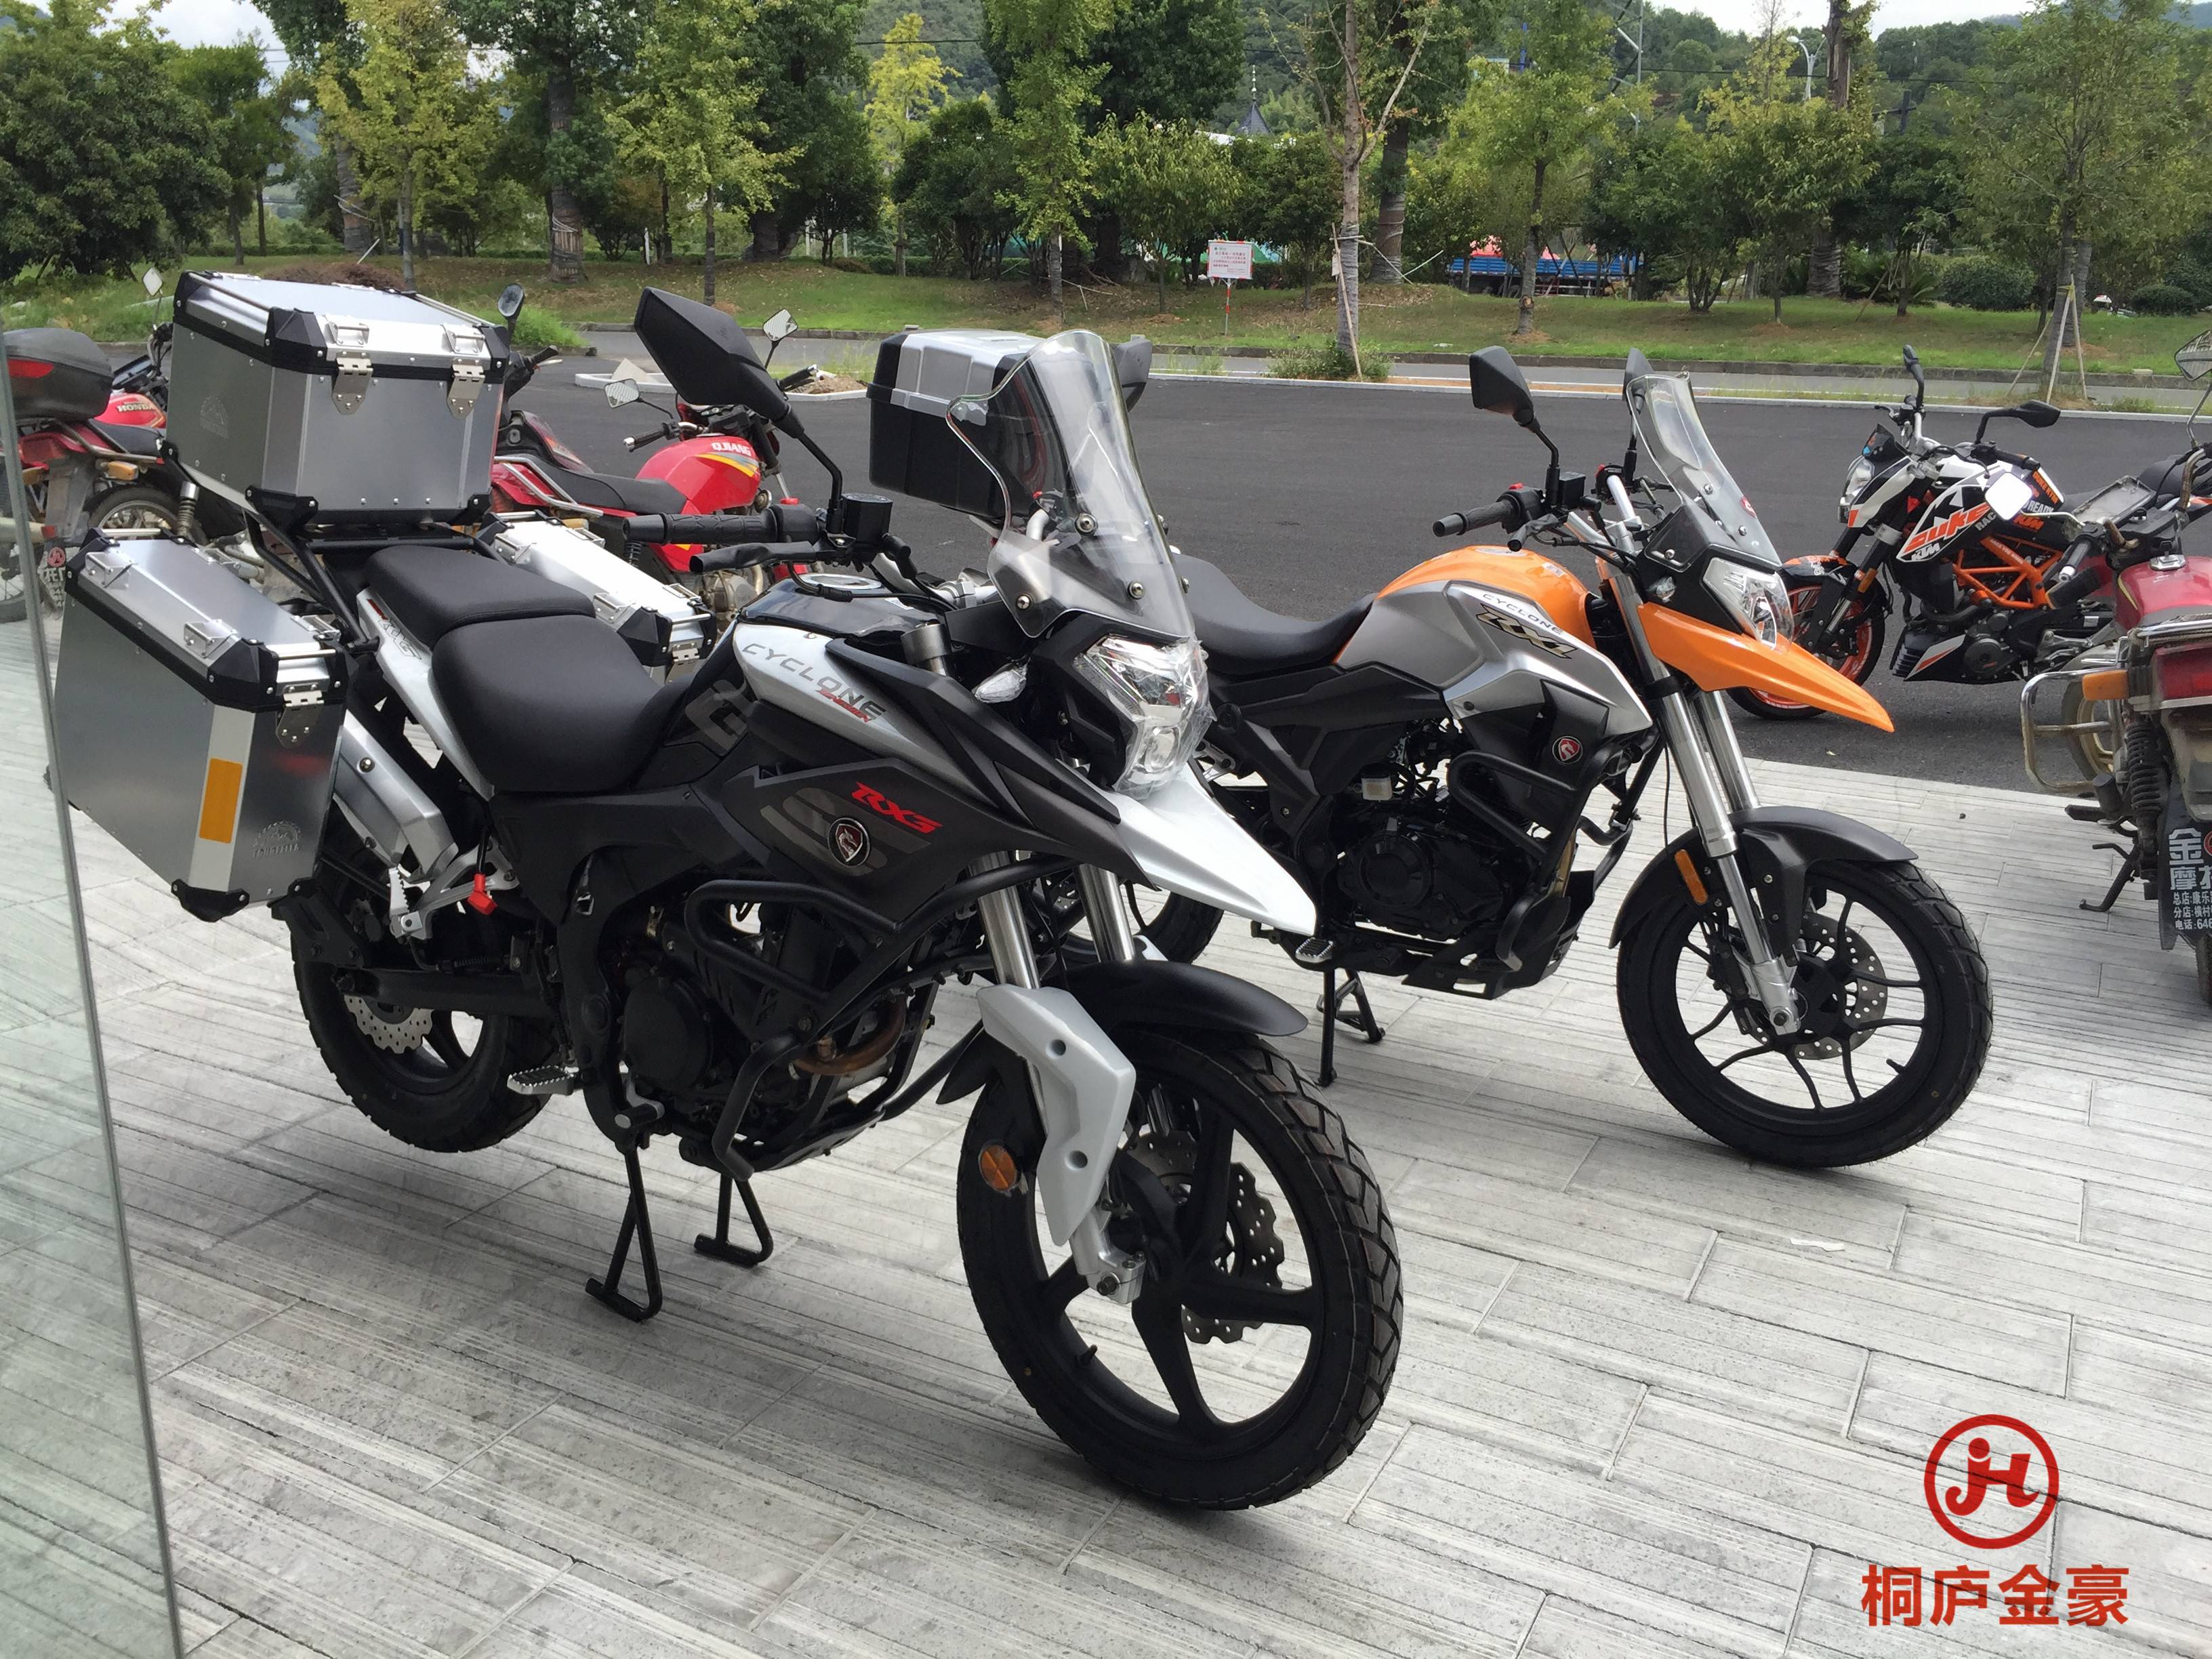 Мотоцикл zongshen rx3 zs250gy-3 эндуро: полная характеристика